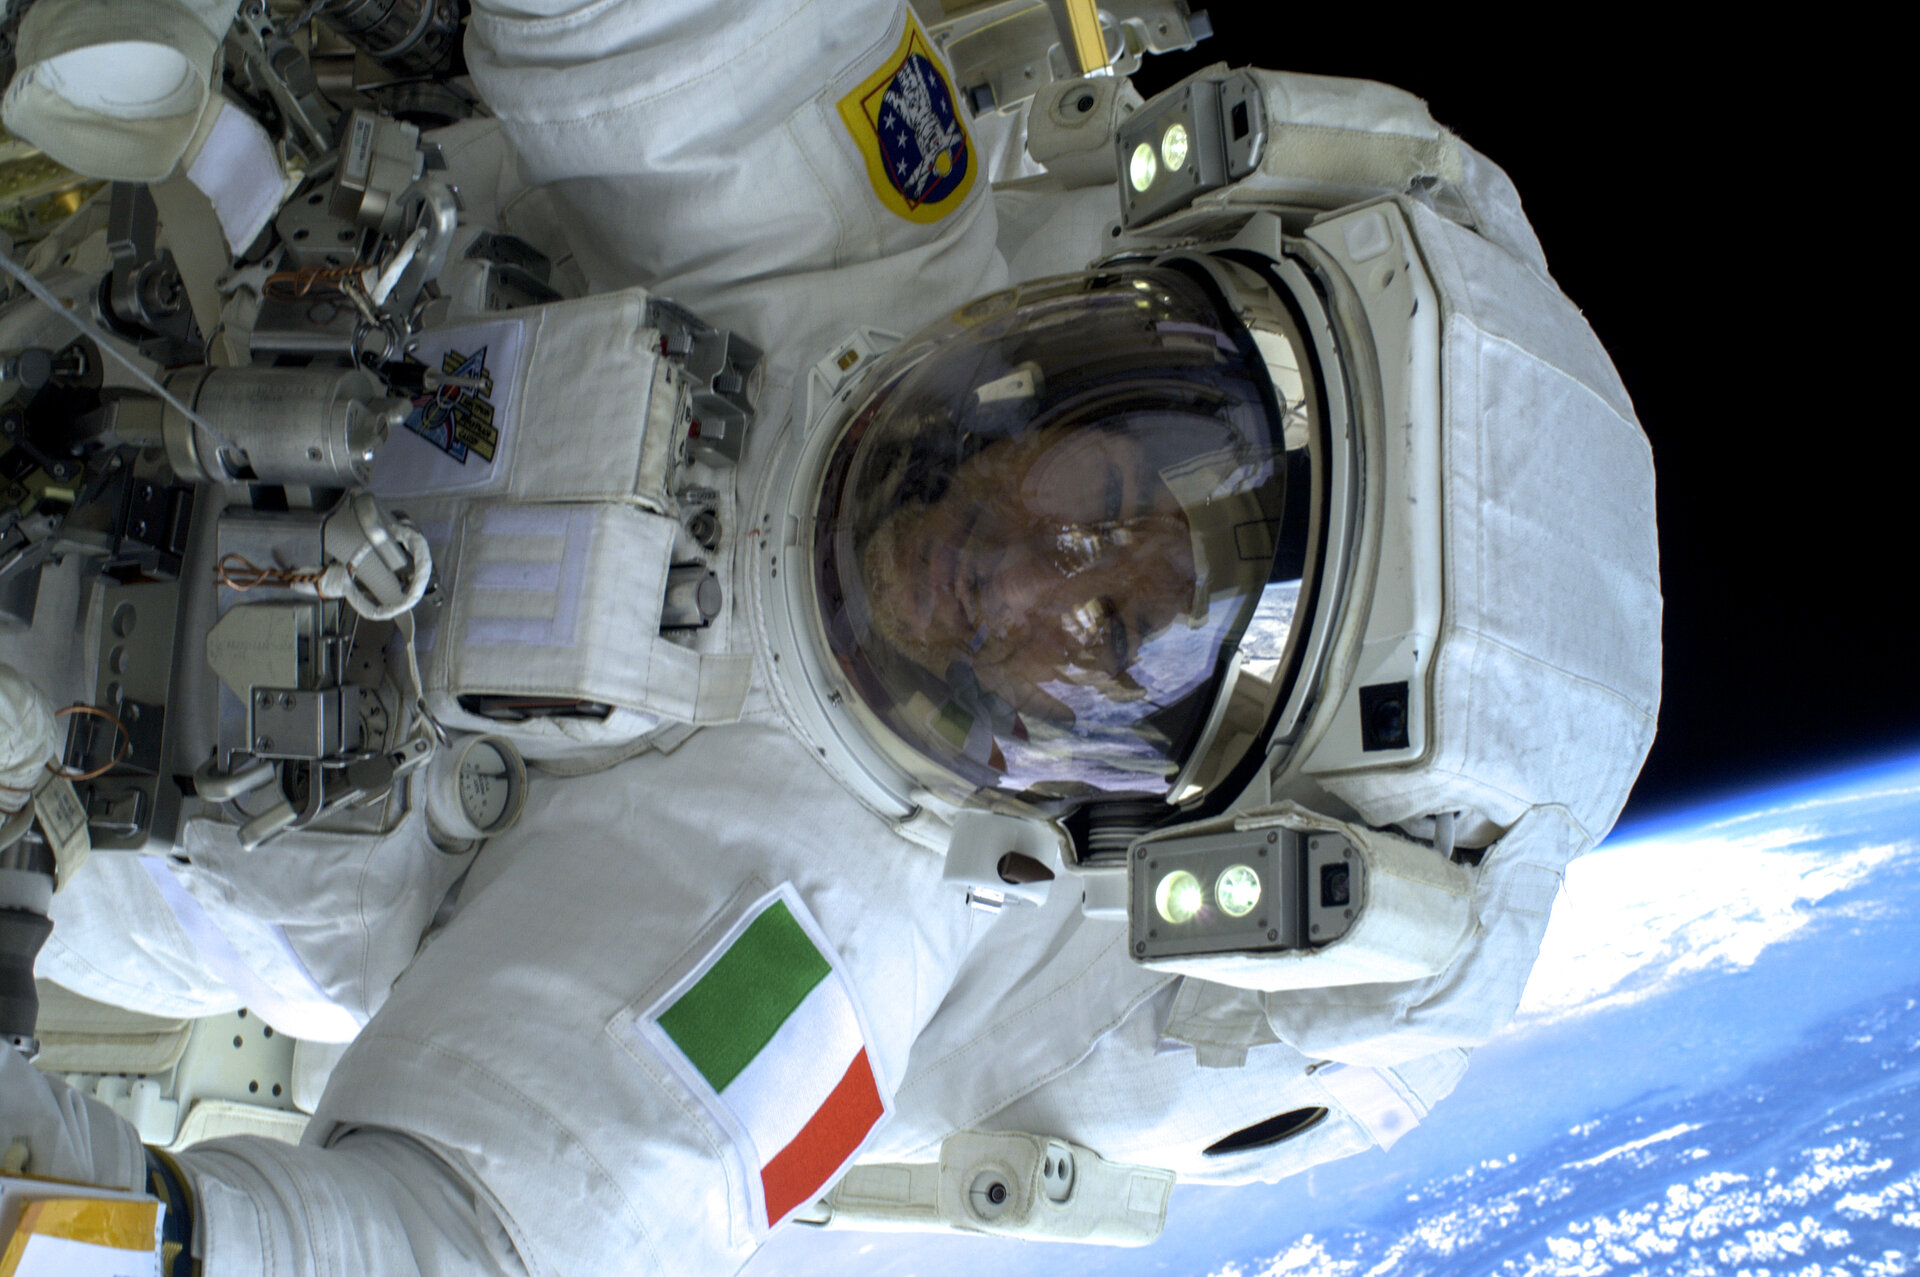 Luca during spacewalk